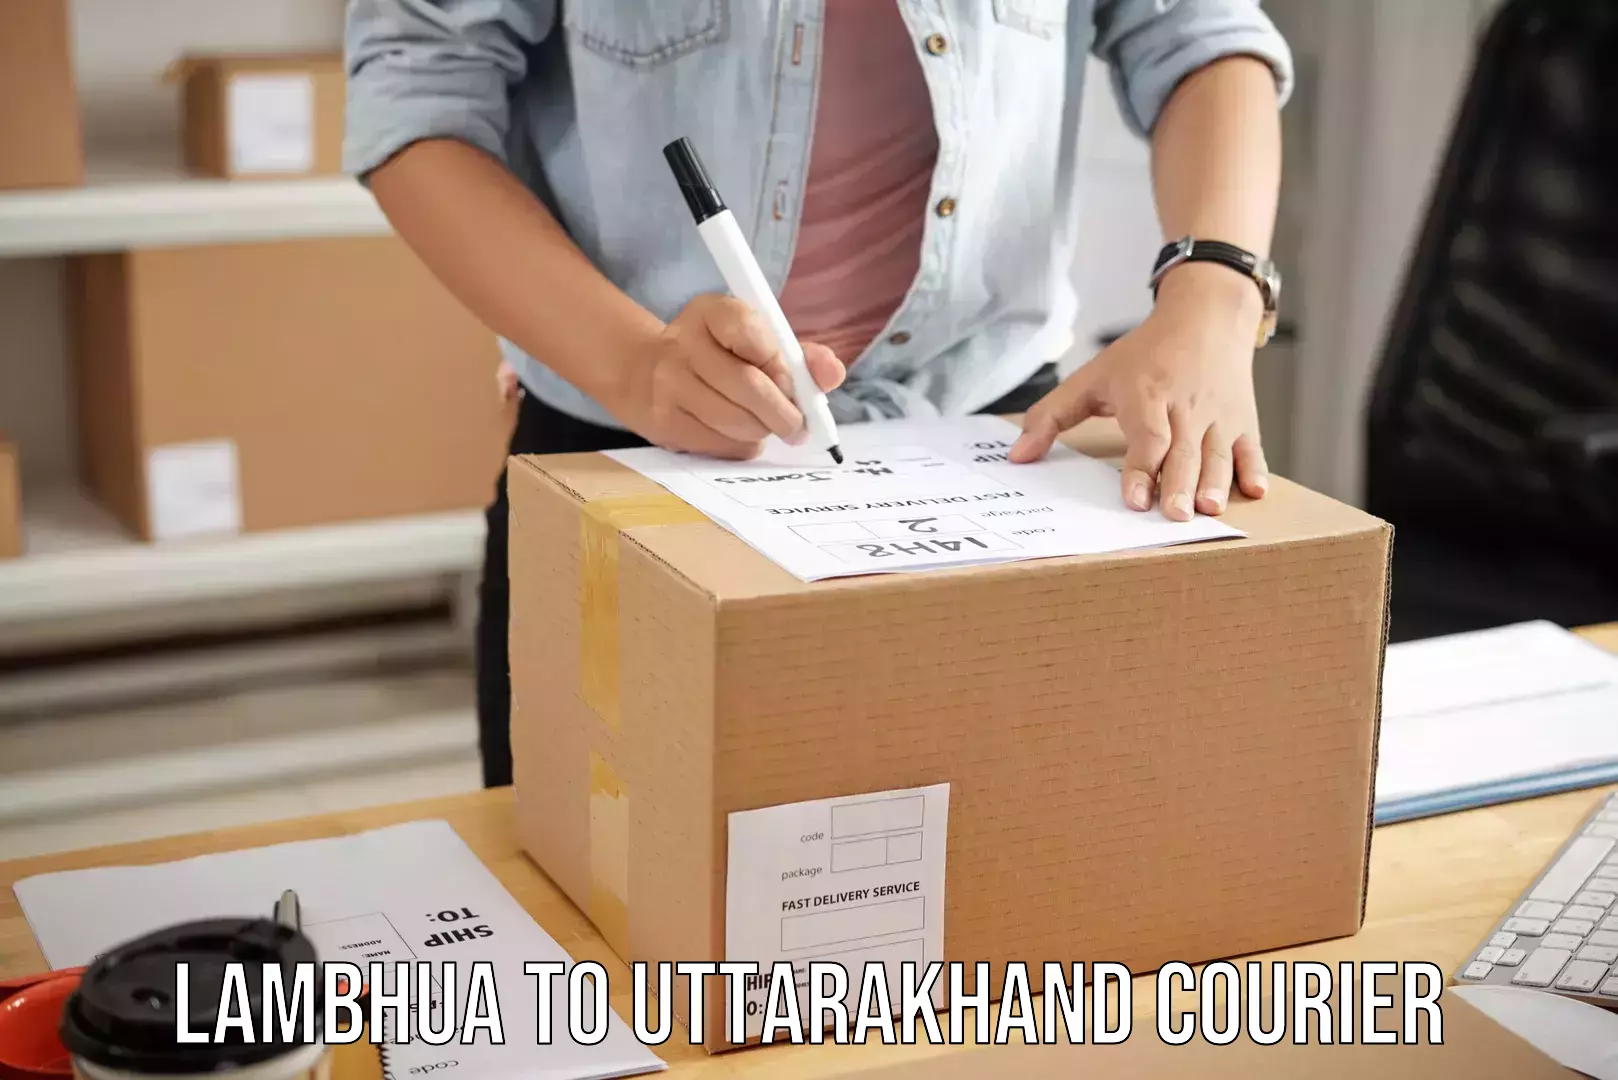 Luggage transfer service Lambhua to Uttarakhand